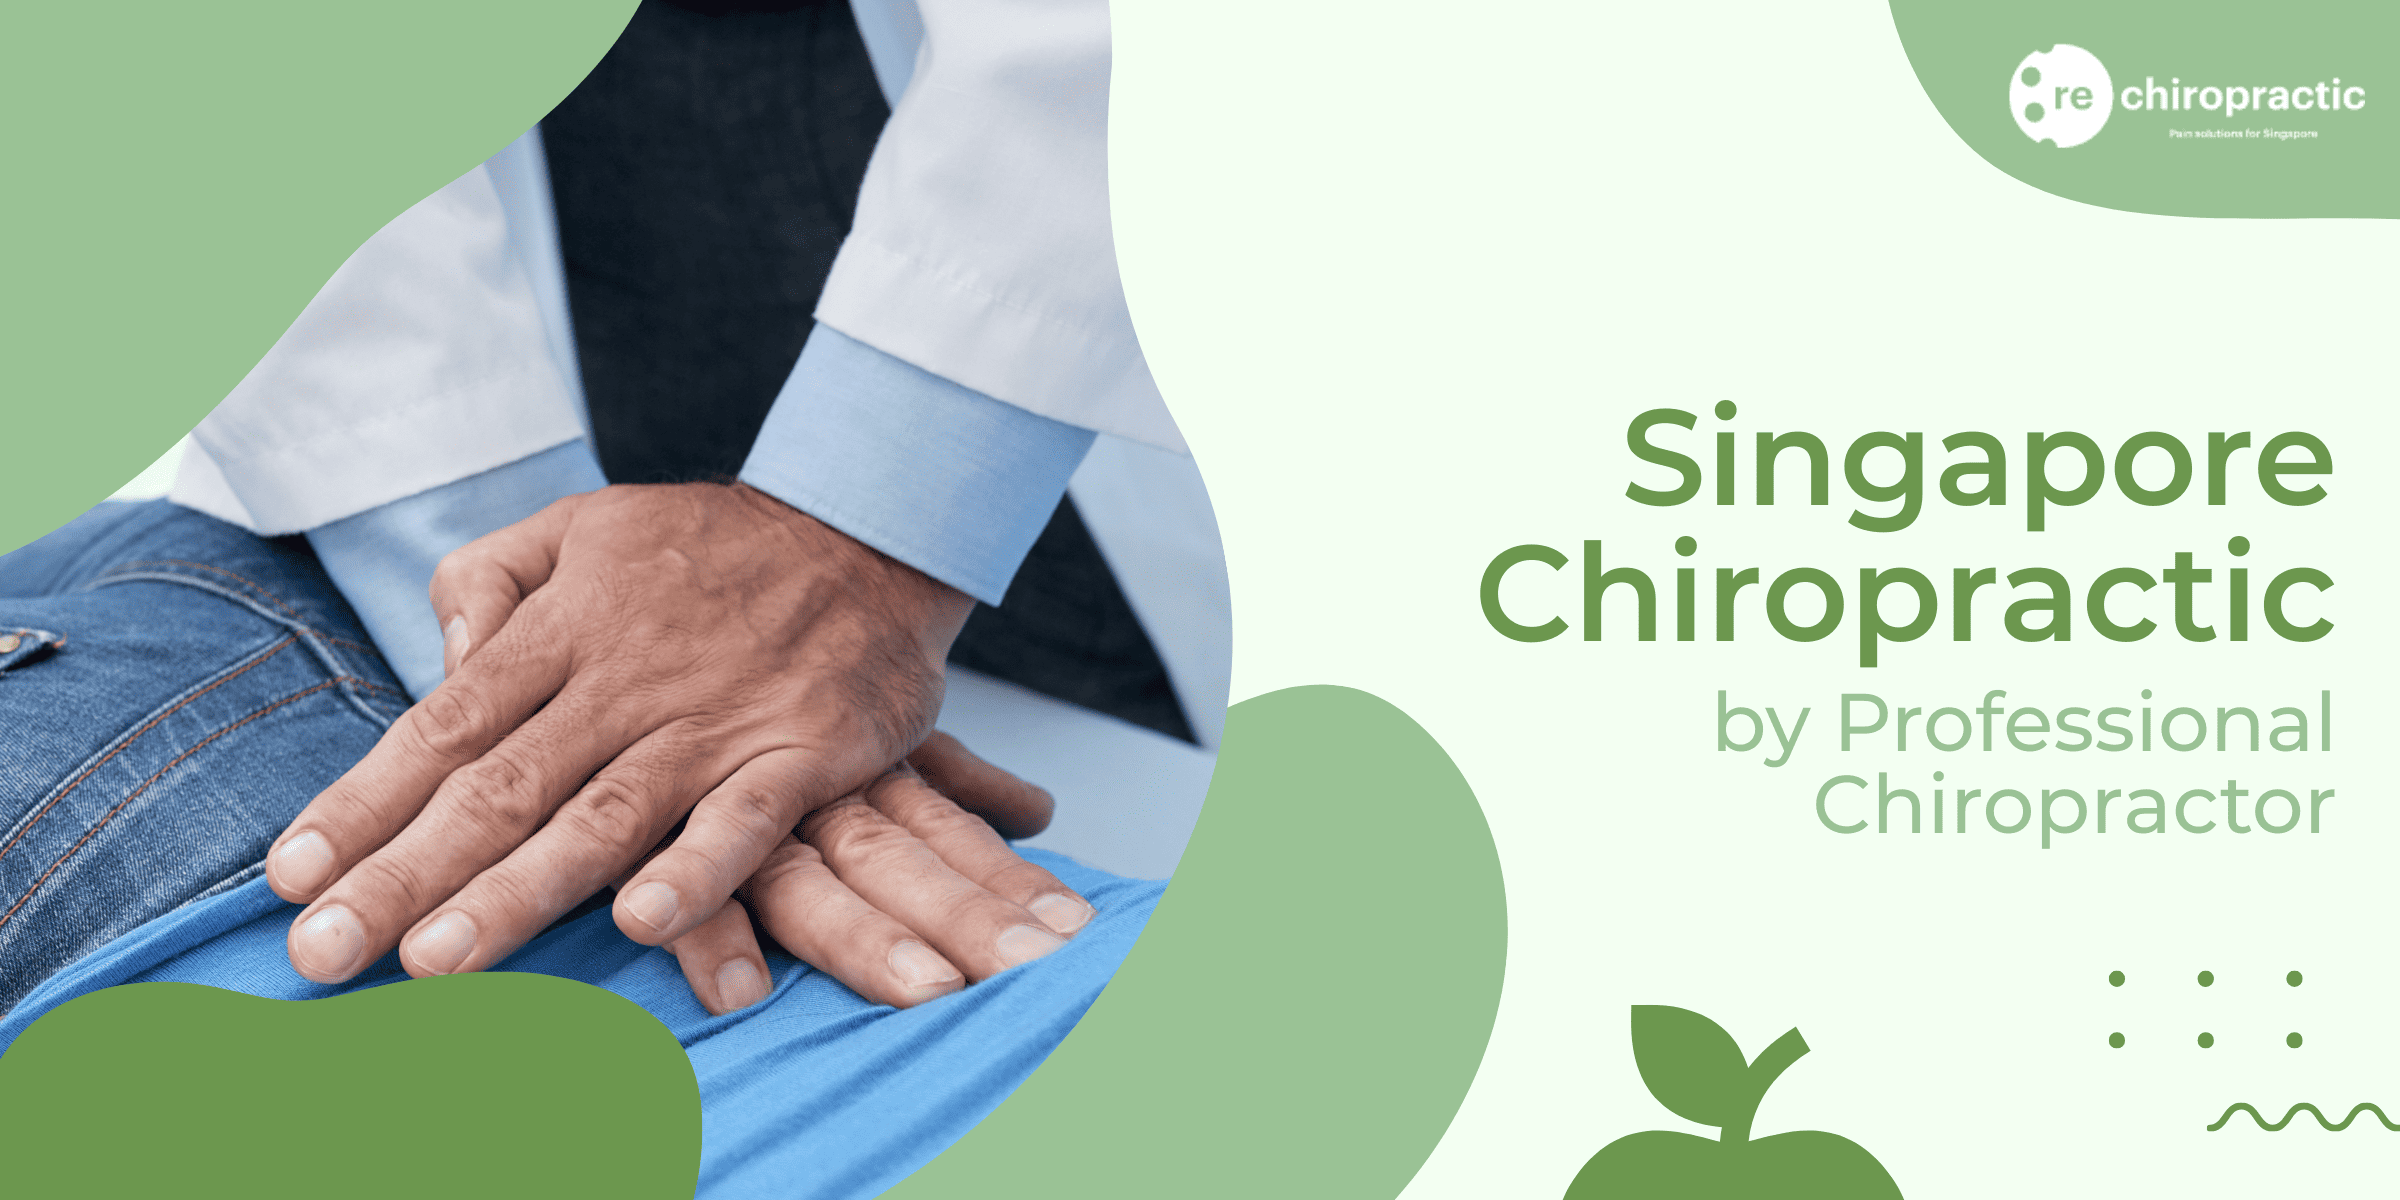 Chiropractic Adjustment - Re:Chiropractic